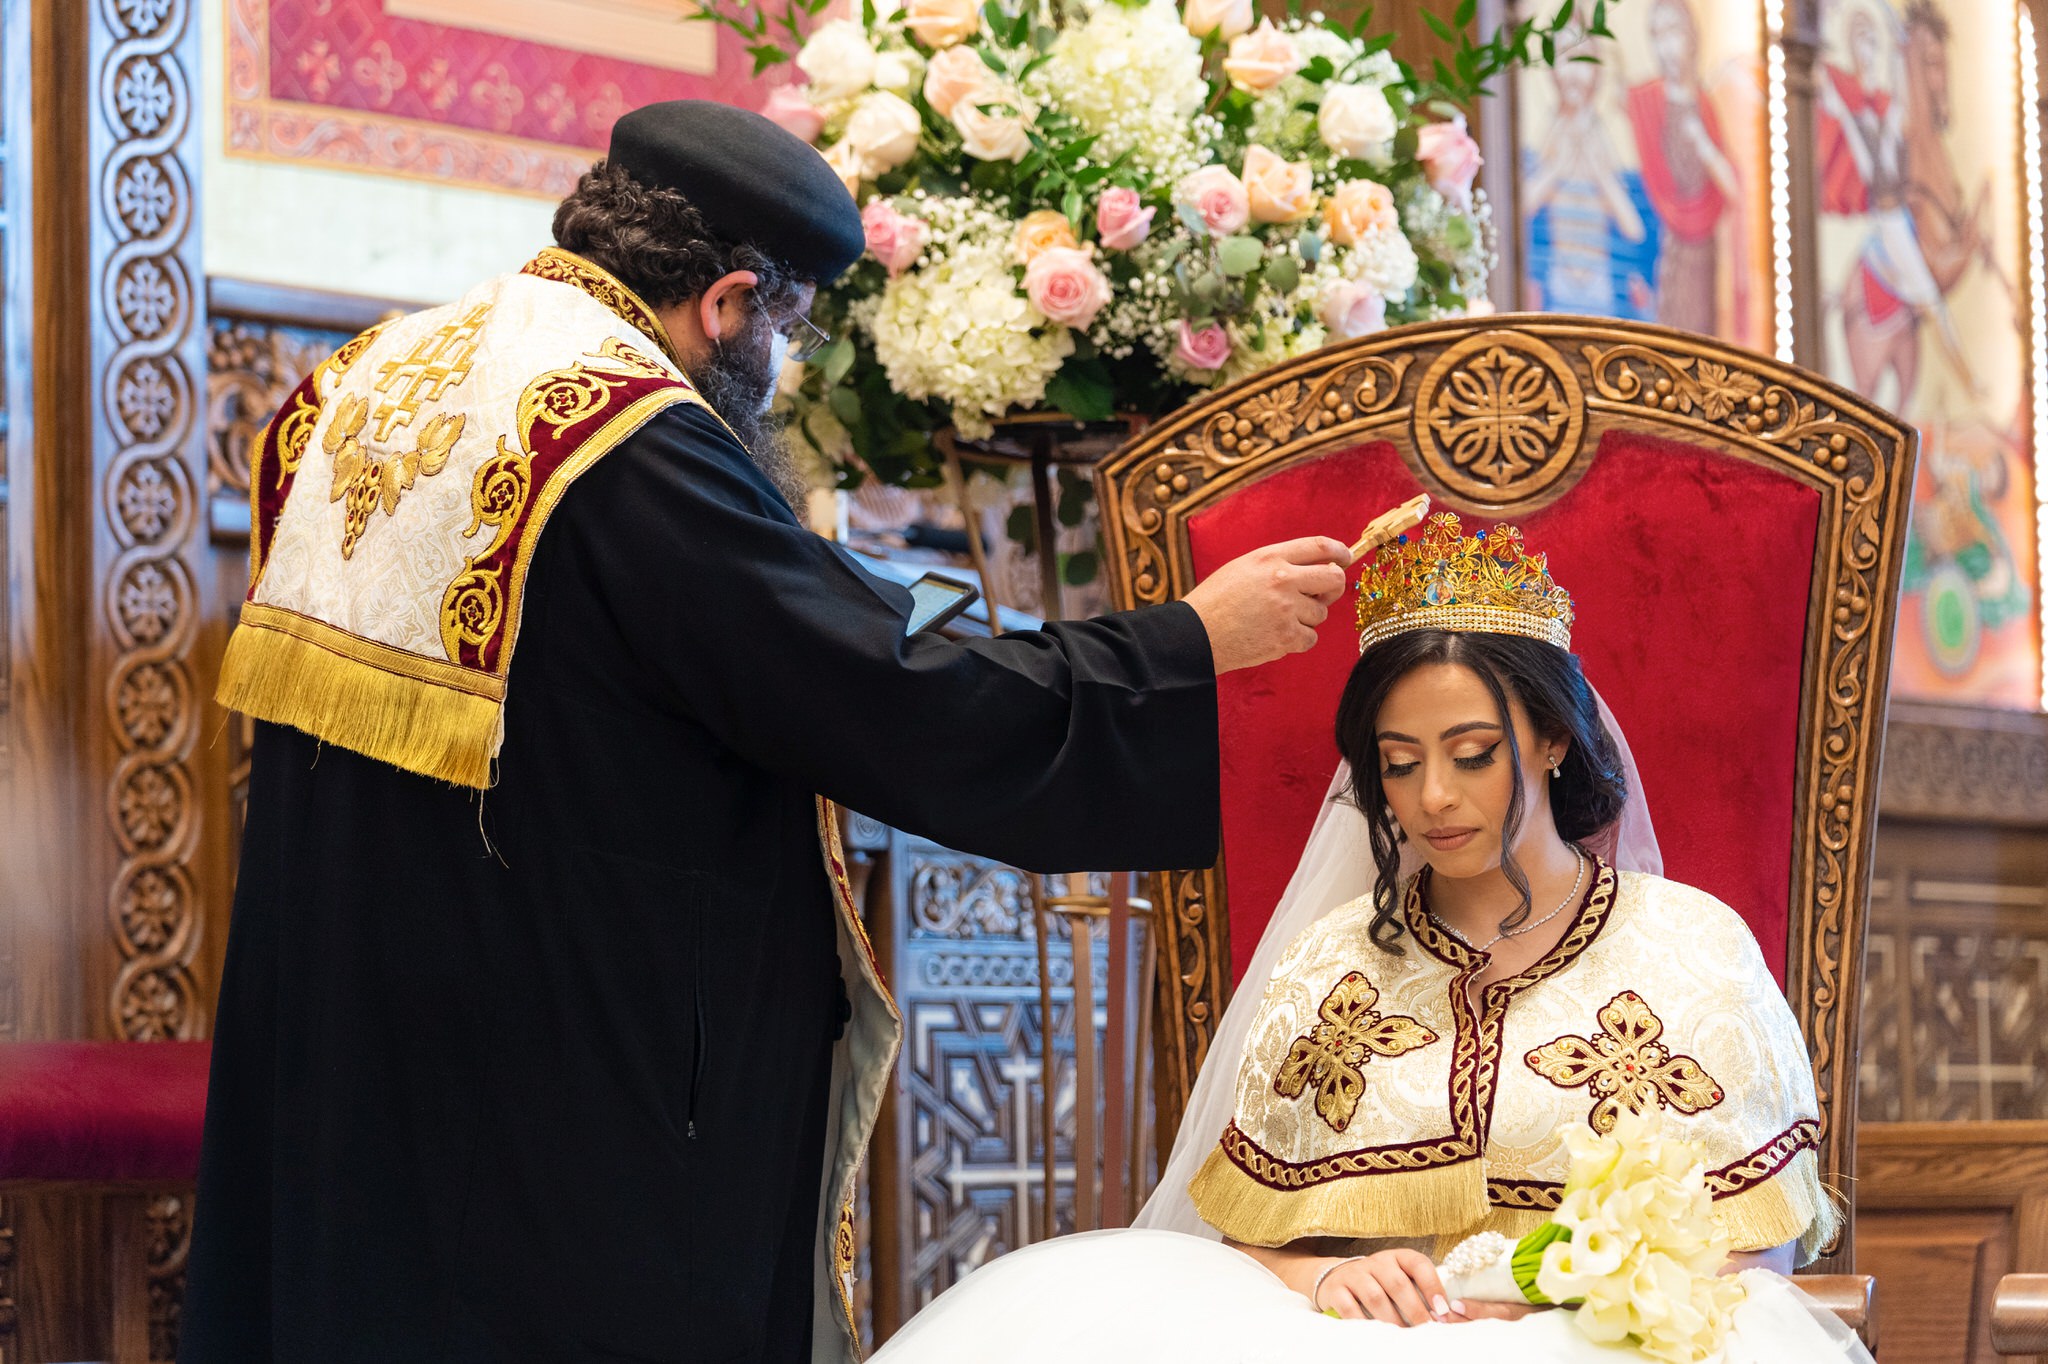 St. Mark Coptic Orthodox wedding